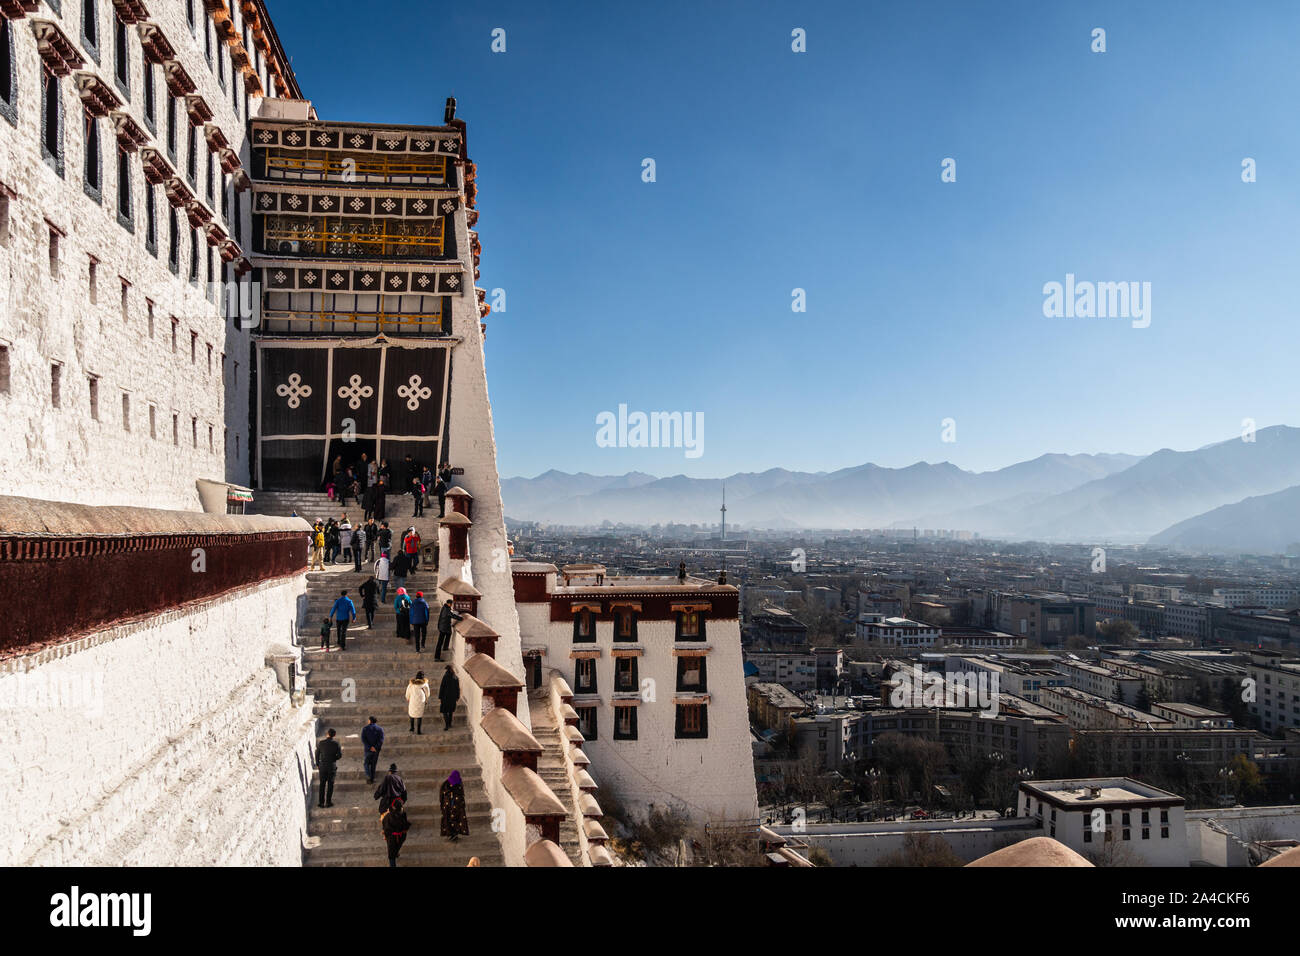 Lhasa, Chine - le 13 décembre 2018 : les touristes monter les escaliers menant à la célèbre Palais du Potala à Lhassa au Tibet, vieille ville avec la ville en province Banque D'Images